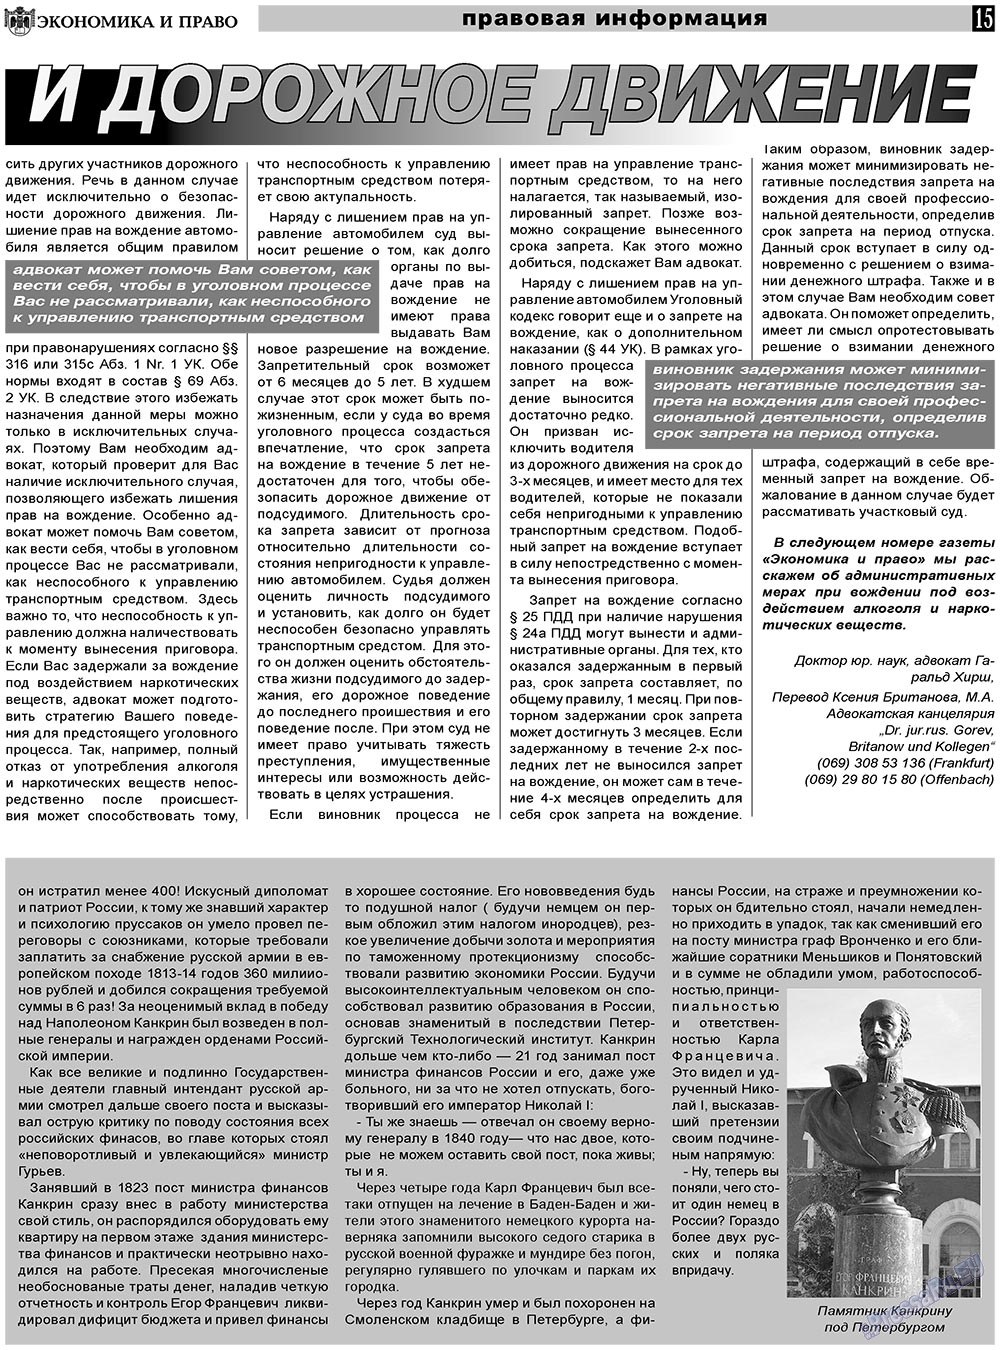 Экономика и право, газета. 2011 №4 стр.15